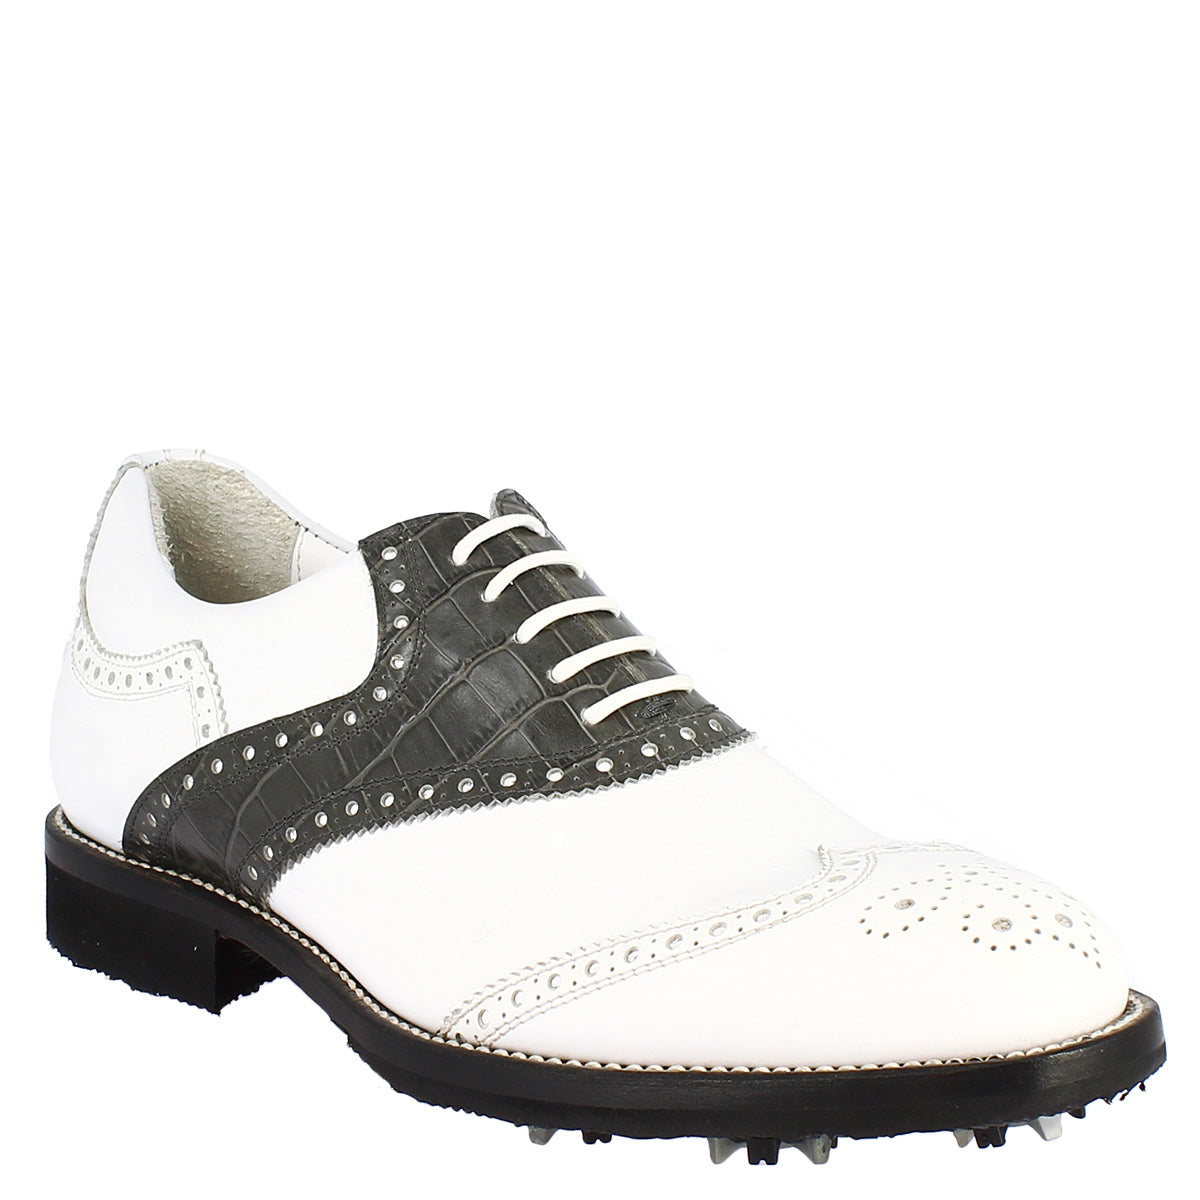 Handgefertigte klassische Herren-Golfschuhe aus weiß-grauem Leder